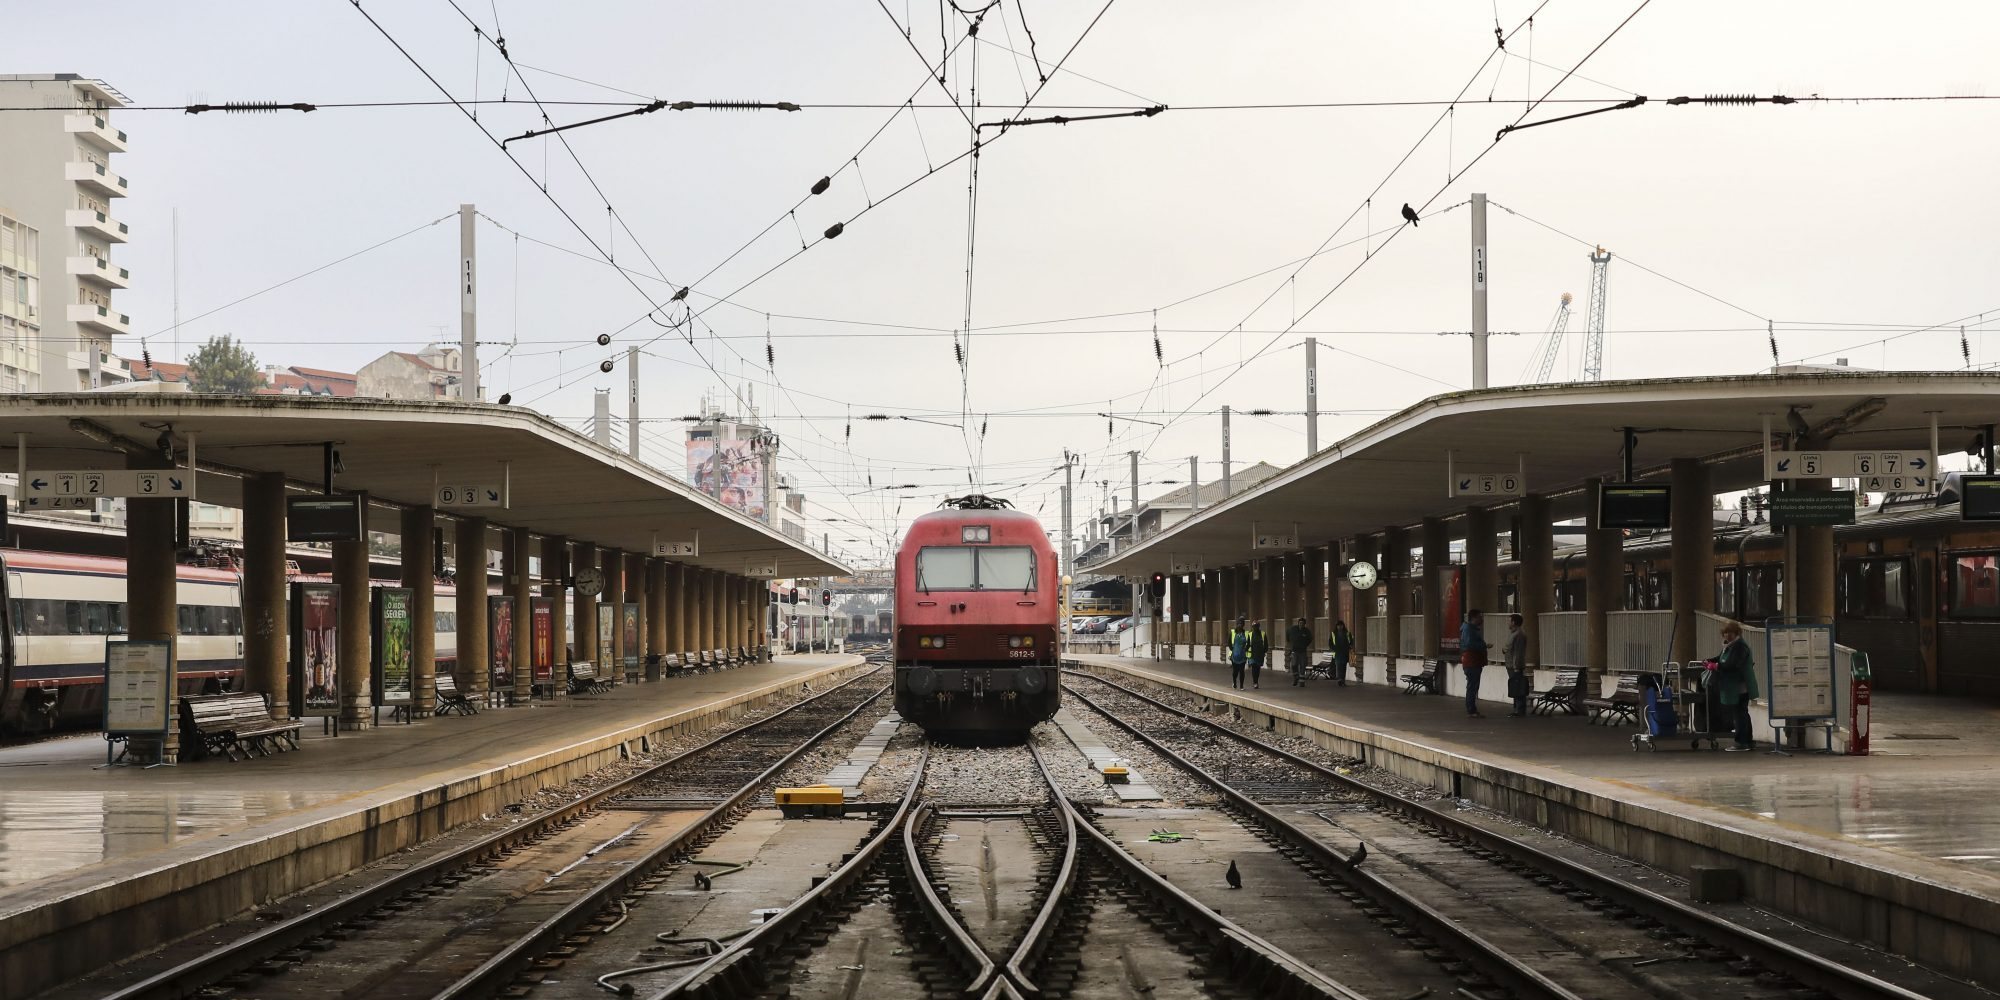 O contrato com a Infraestruturas de Portugal é para o abastecimento de eletricidade à circulação ferroviária